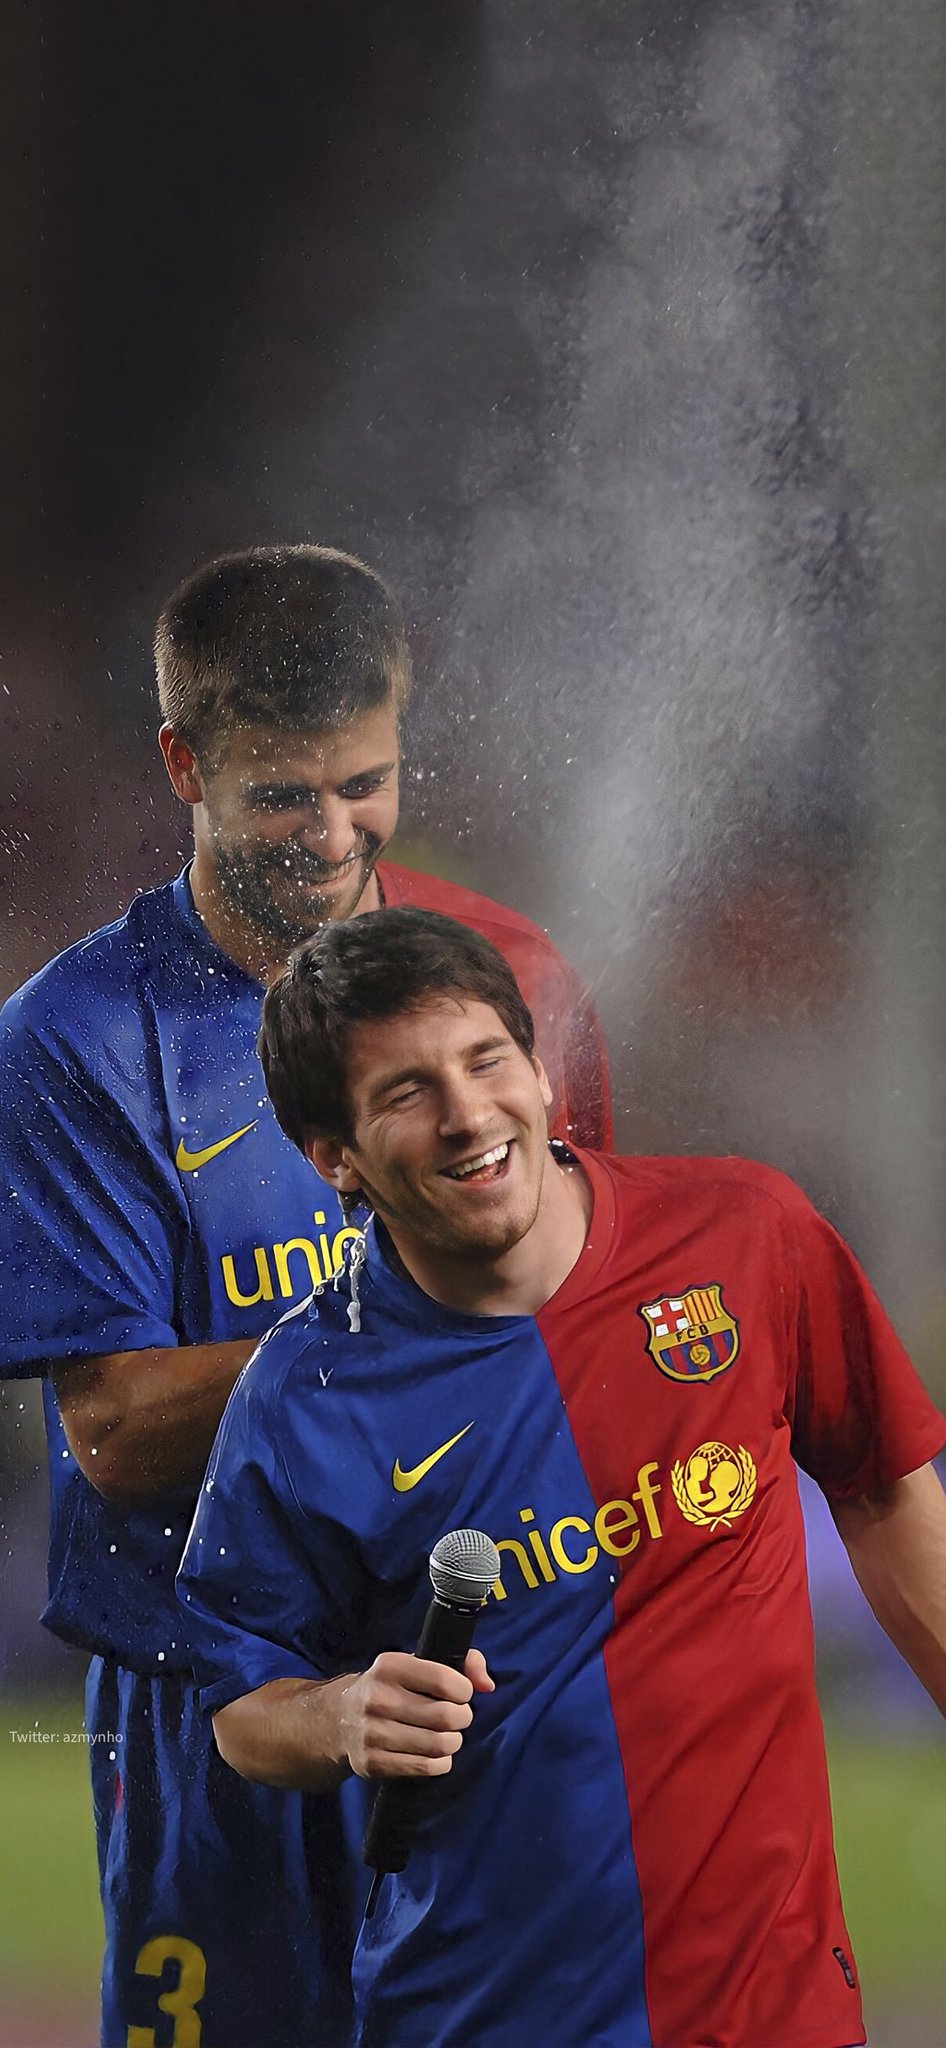 Hình nền Messi trẻ tuổi sẽ cho bạn cái nhìn mới về cậu bé có tài năng bẩm sinh đến từ Argentina. Bạn sẽ được chiêm ngưỡng những khoảnh khắc đầy cảm xúc của Messi từ khi còn rất trẻ đến khi trưởng thành.